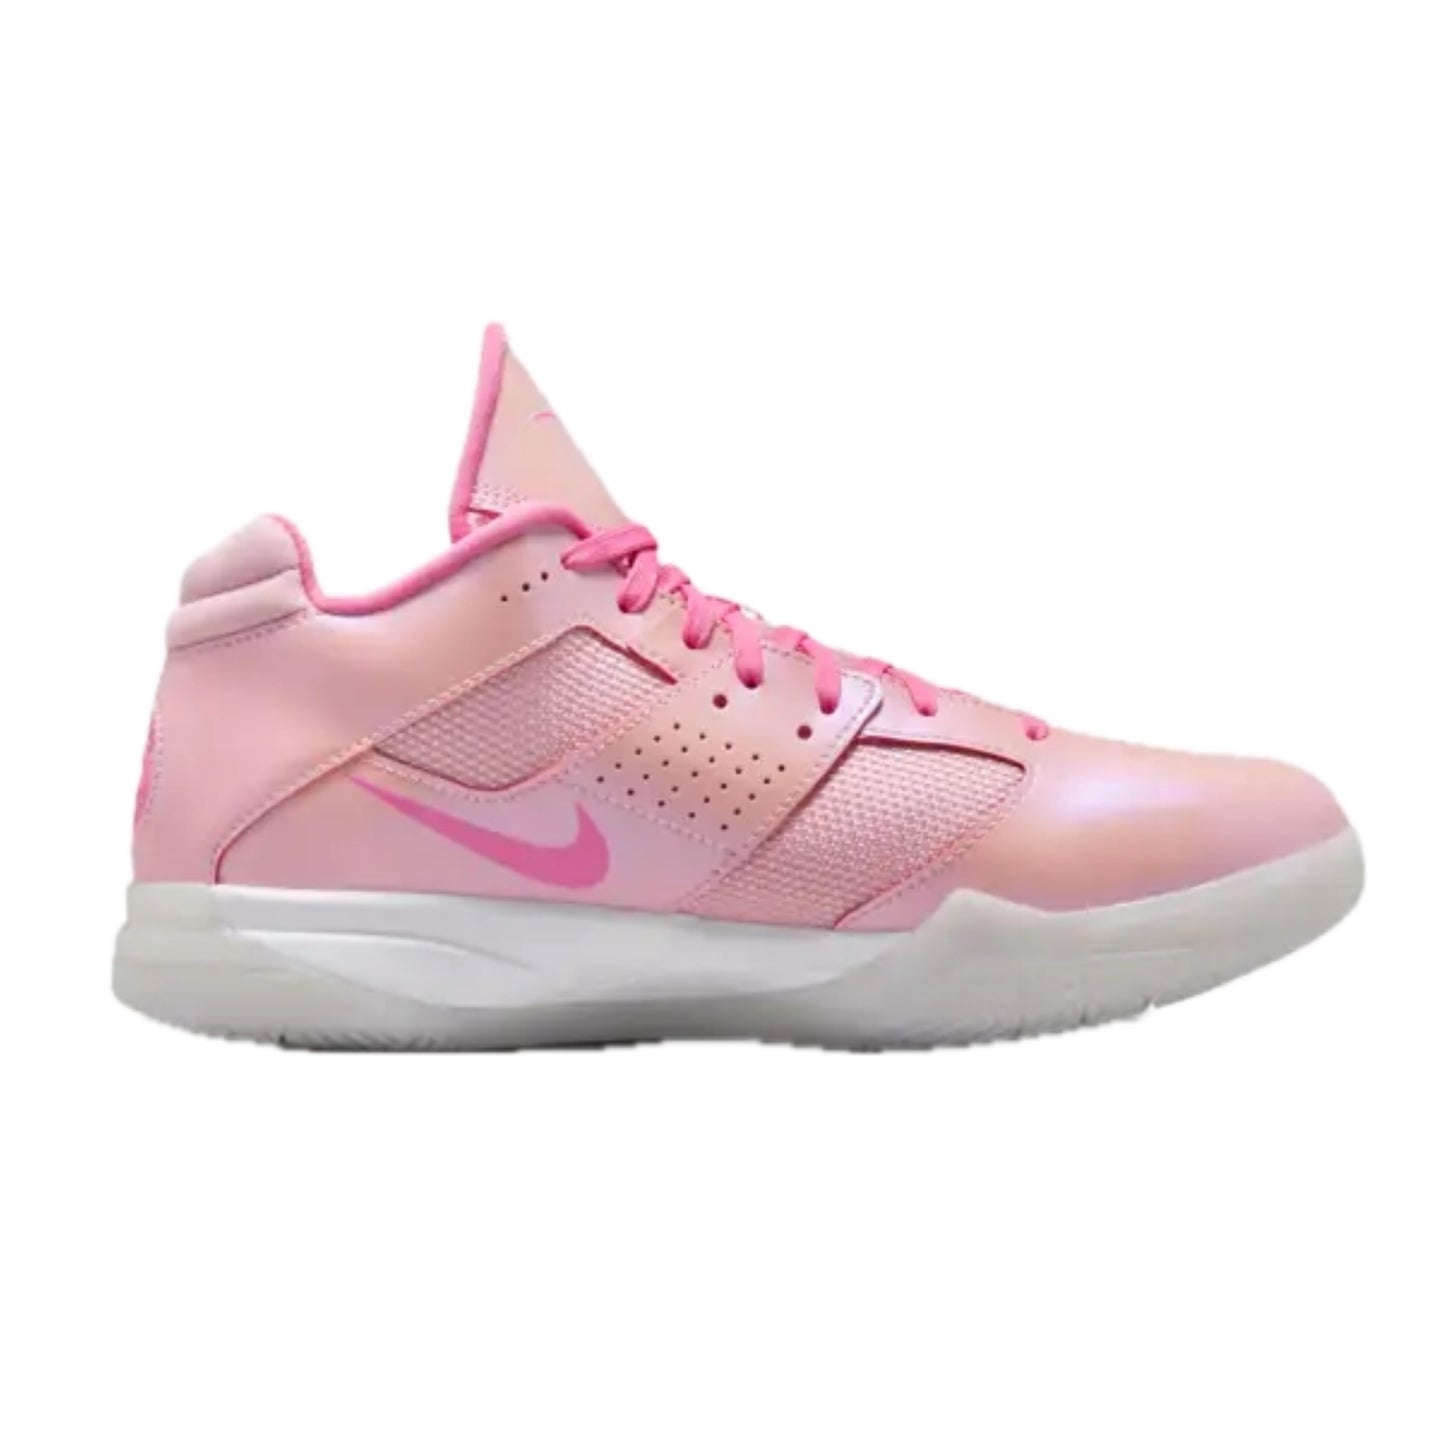 Nike KD 3 Aunt Pearl Medium Soft Pink White Lotus Pink